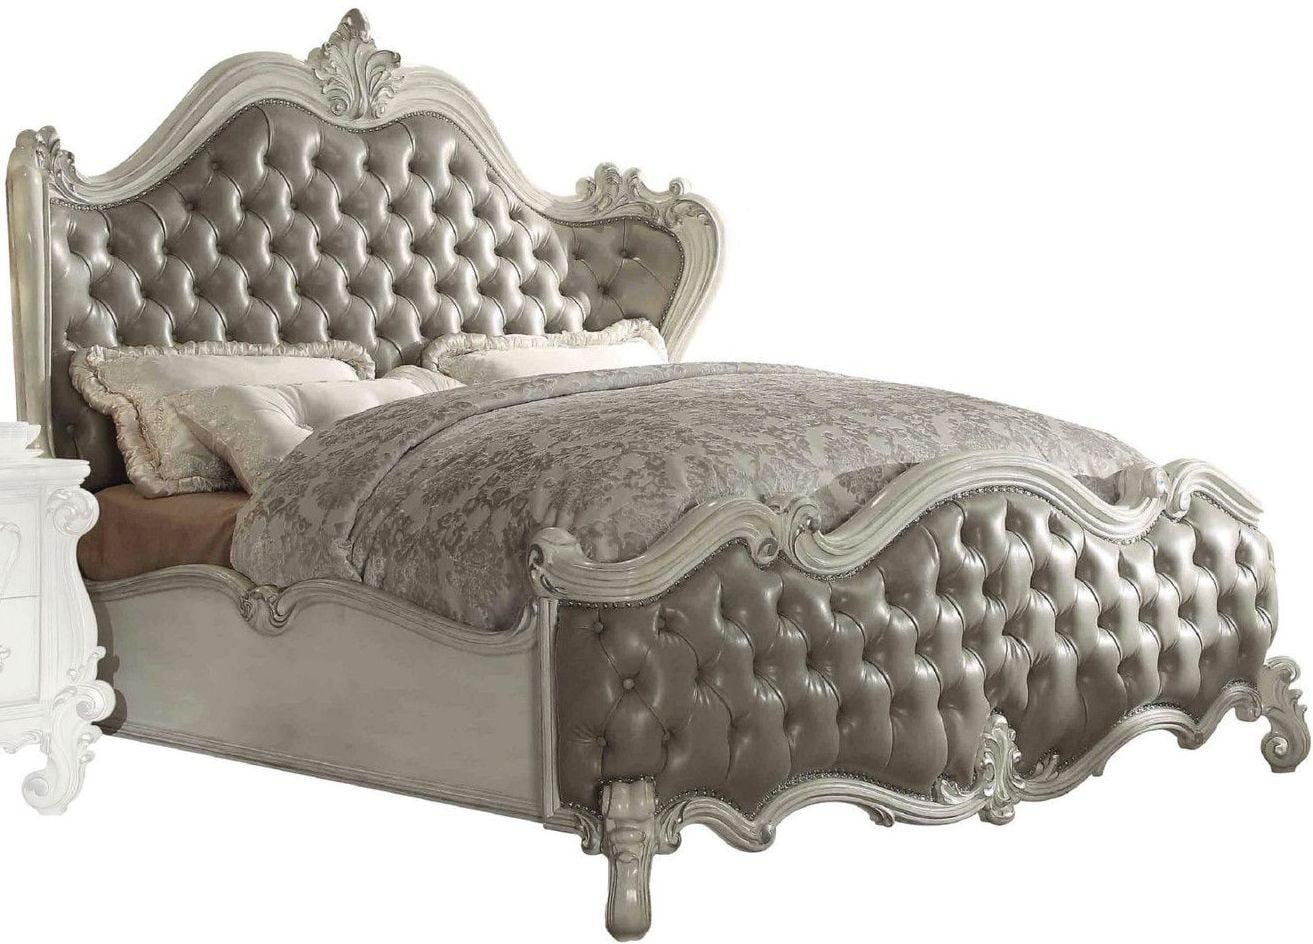 

    
Superstar Upholstered Standard Queen Bedroom Set 3 Pcs
